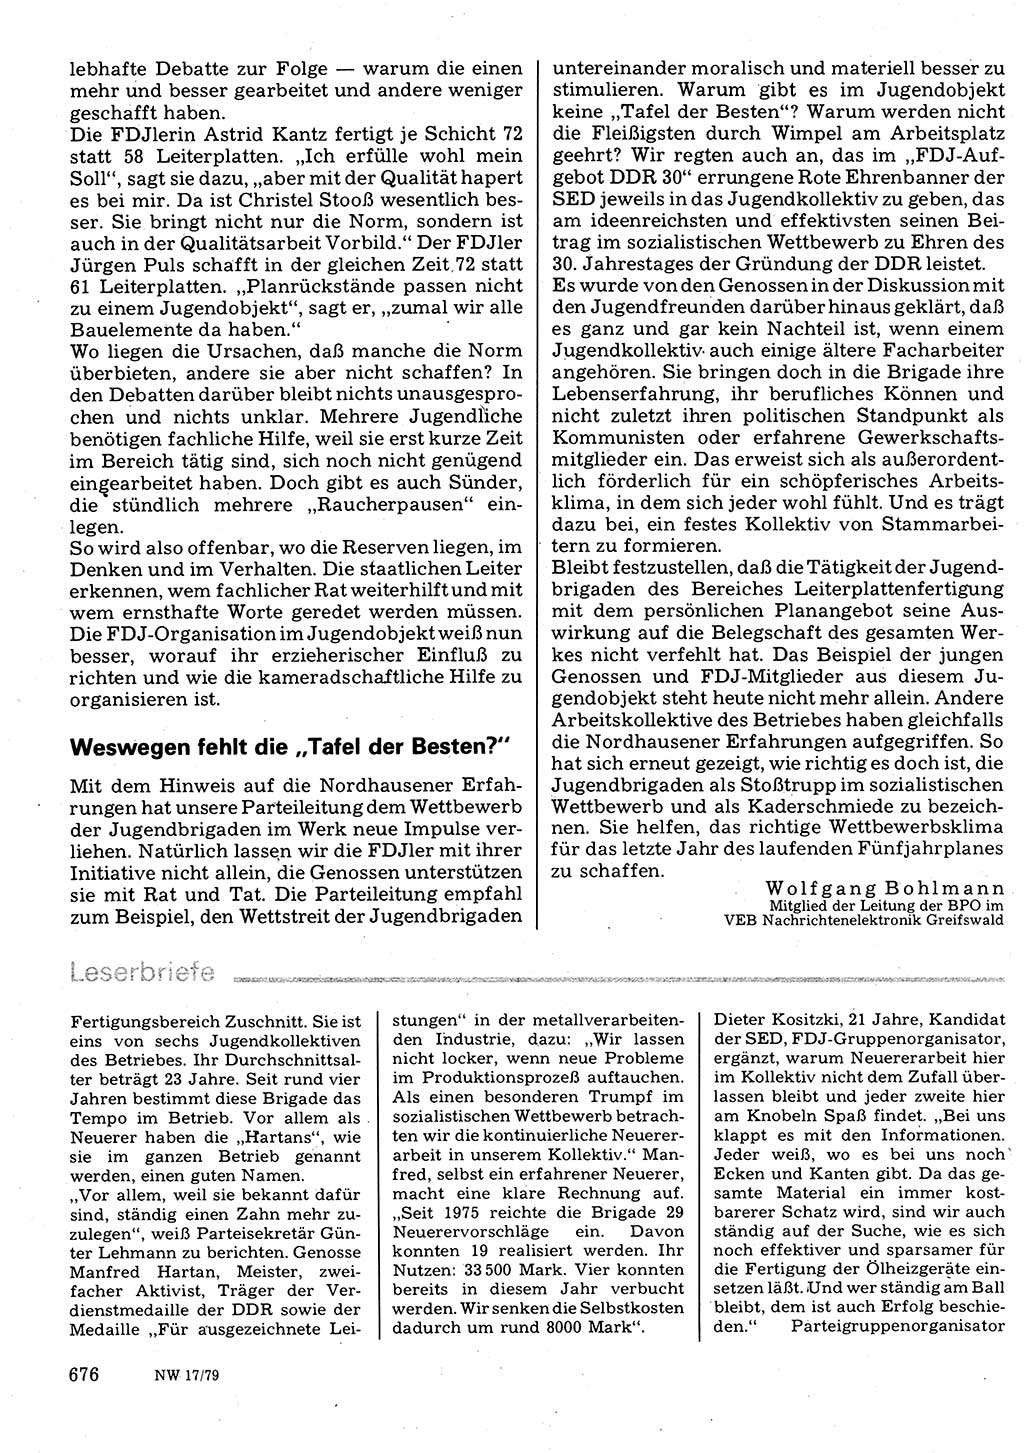 Neuer Weg (NW), Organ des Zentralkomitees (ZK) der SED (Sozialistische Einheitspartei Deutschlands) für Fragen des Parteilebens, 34. Jahrgang [Deutsche Demokratische Republik (DDR)] 1979, Seite 676 (NW ZK SED DDR 1979, S. 676)